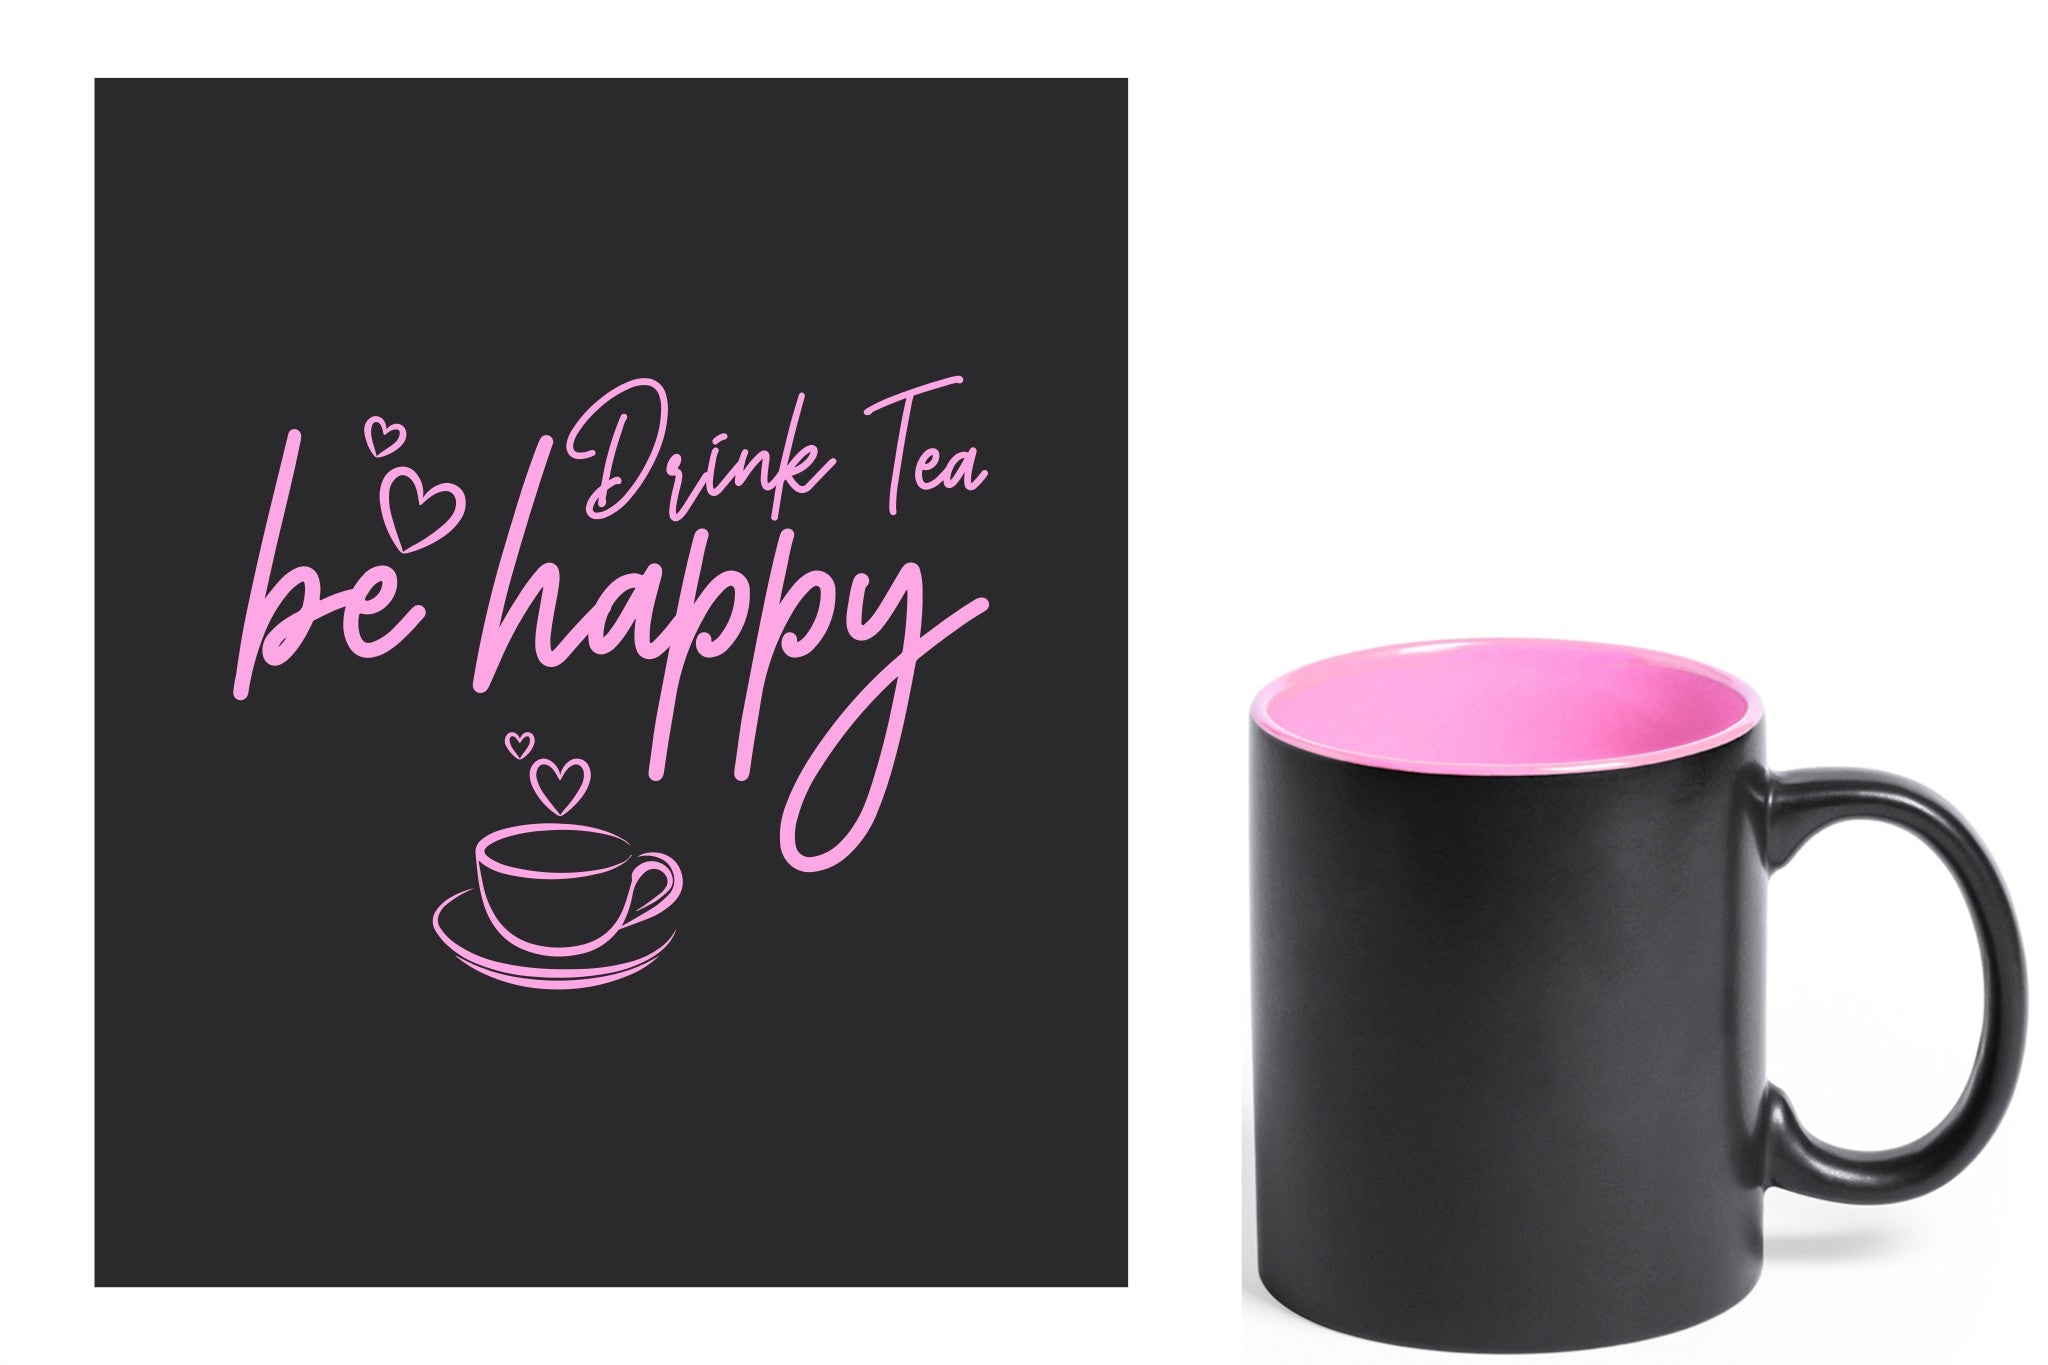 zwarte keramische mok met roze gravure  'Be happy drink tea'.